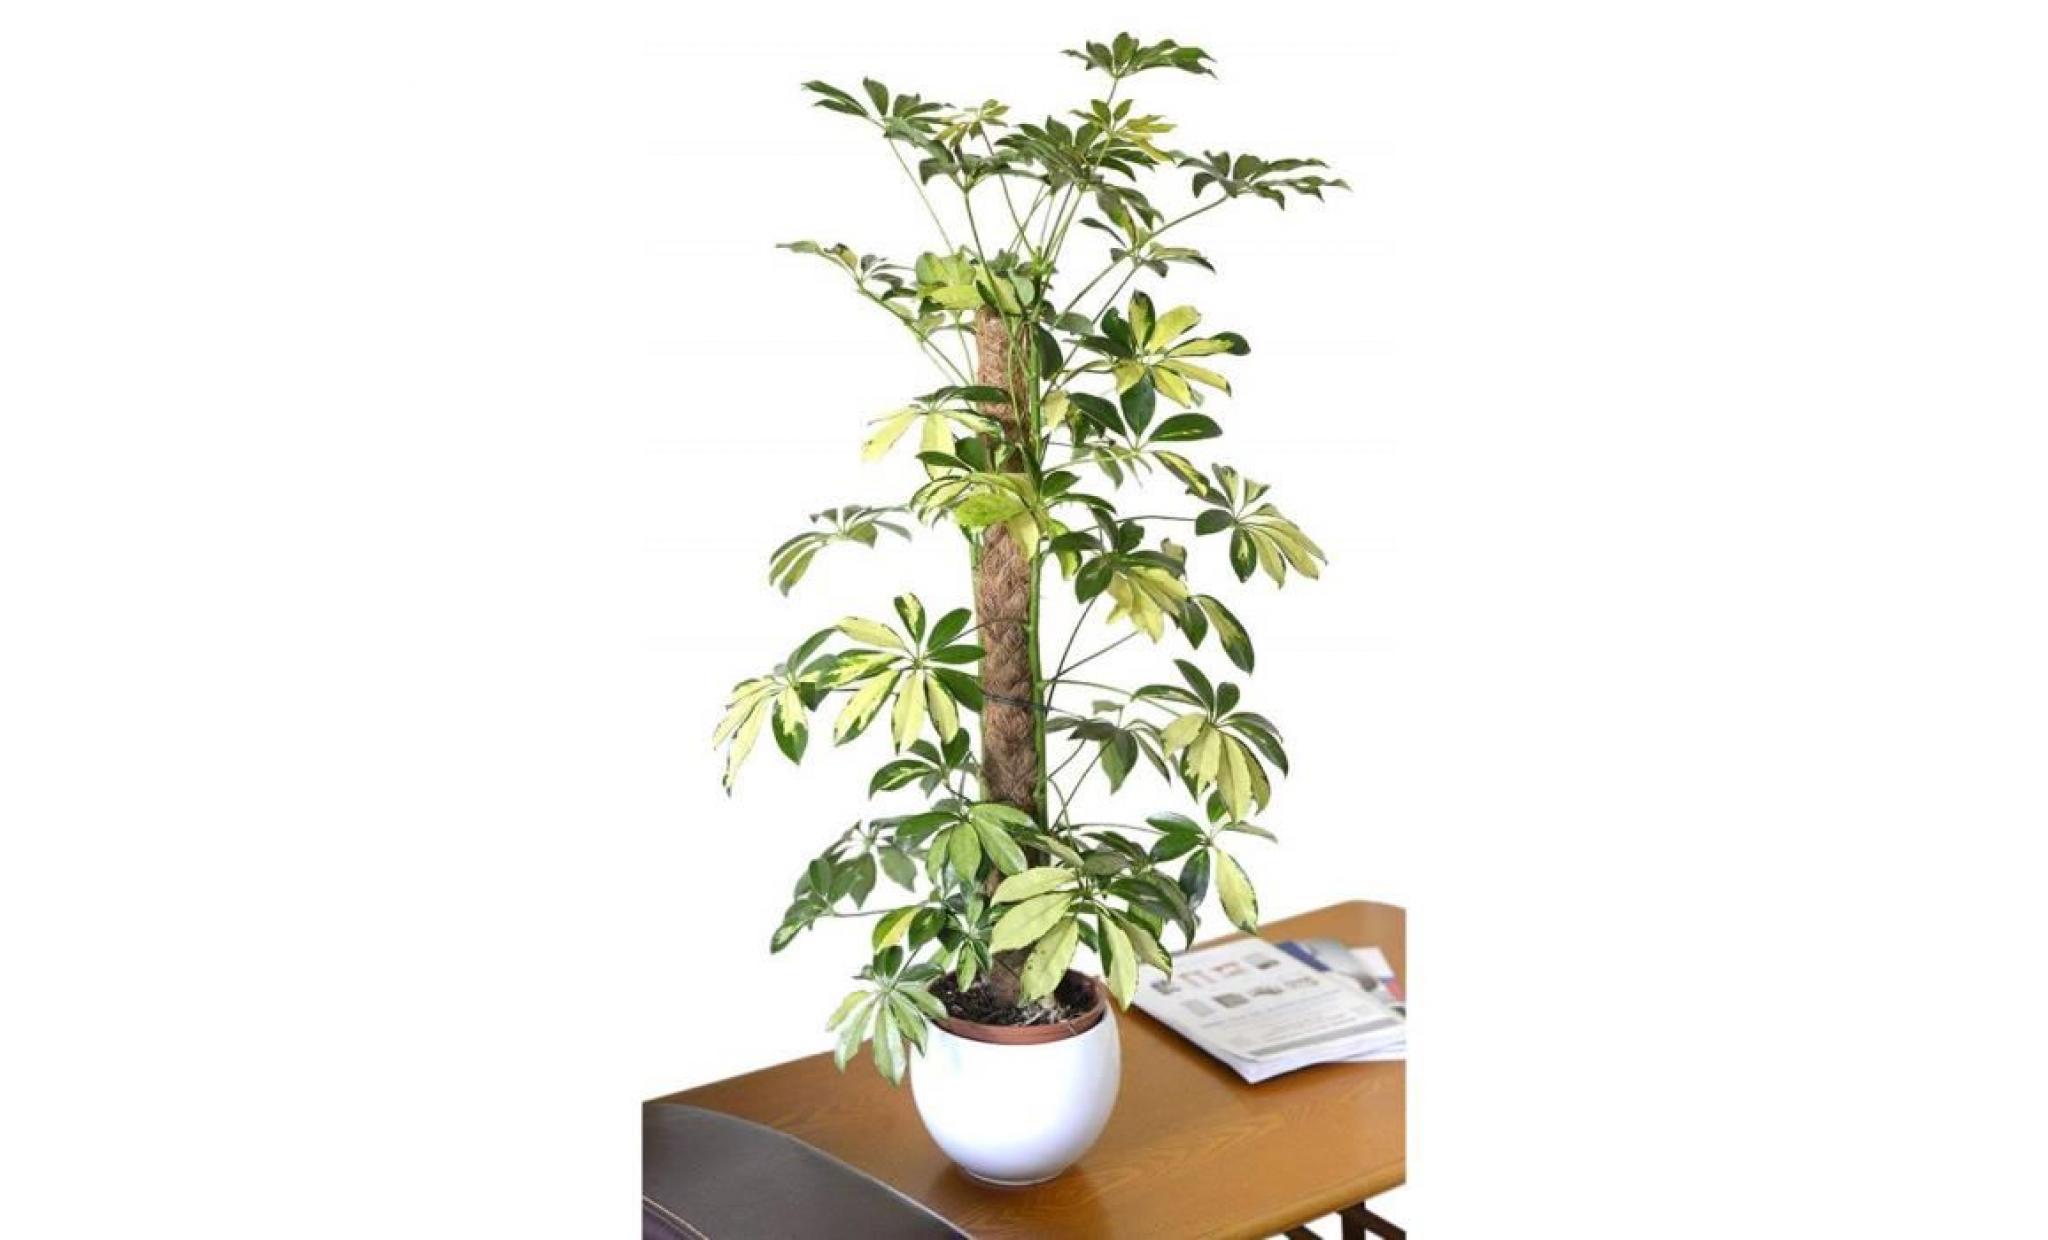 plante d'intérieur   plante pour la maison ou le bureau   schefflera trinette arborea variegata   plante à feuillage panaché, 80cm